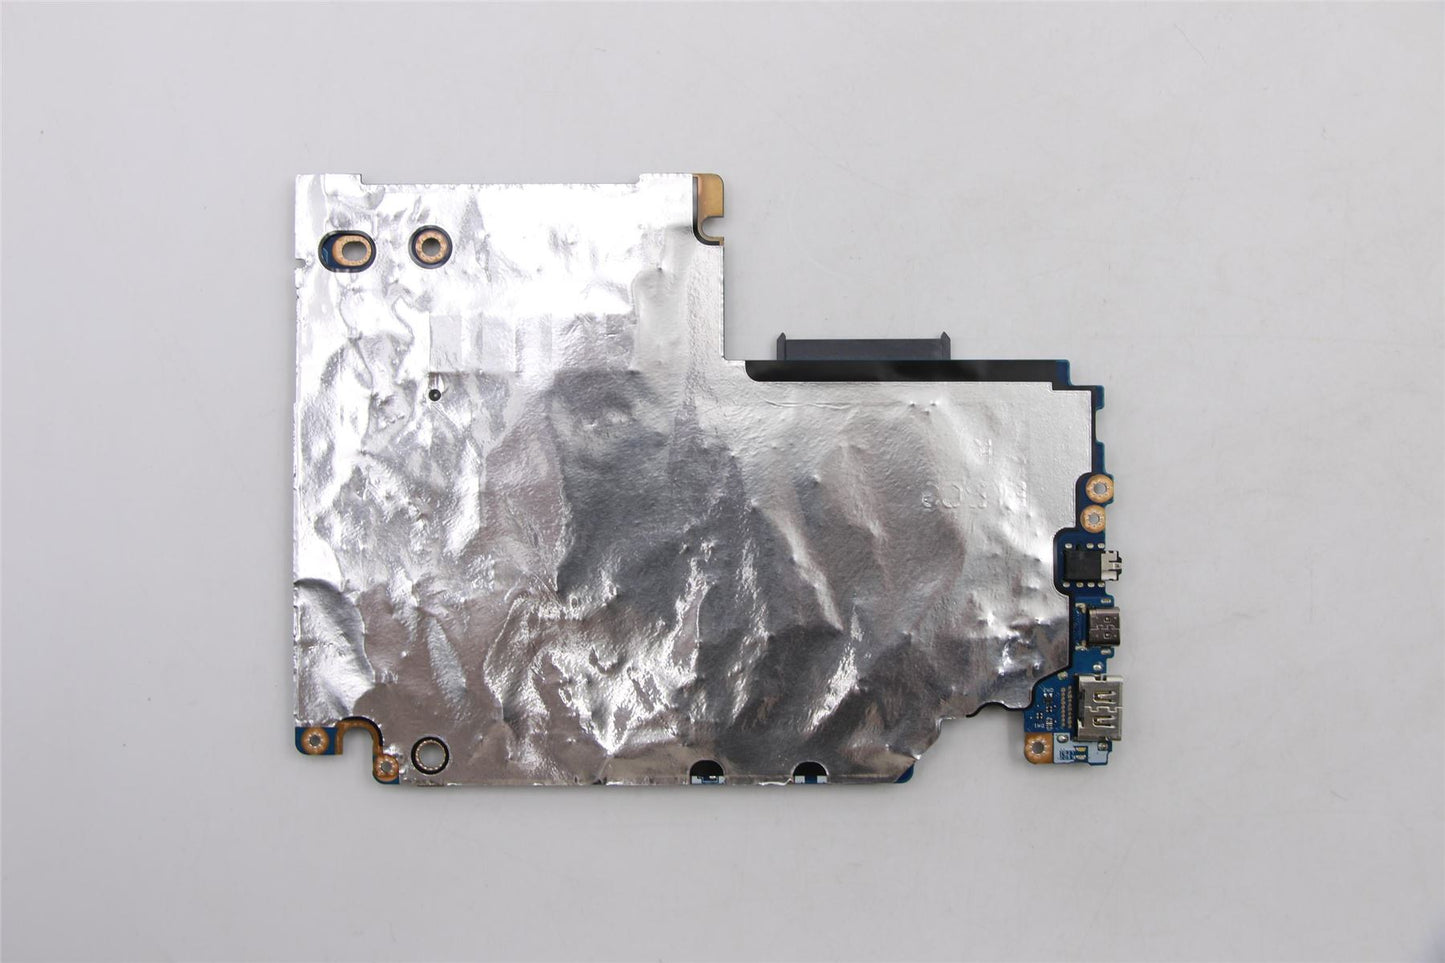 Lenovo IdeaPad S340-15API Motherboard Mainboard UMA AMD Ryzen 3 3200U 5B20S42443